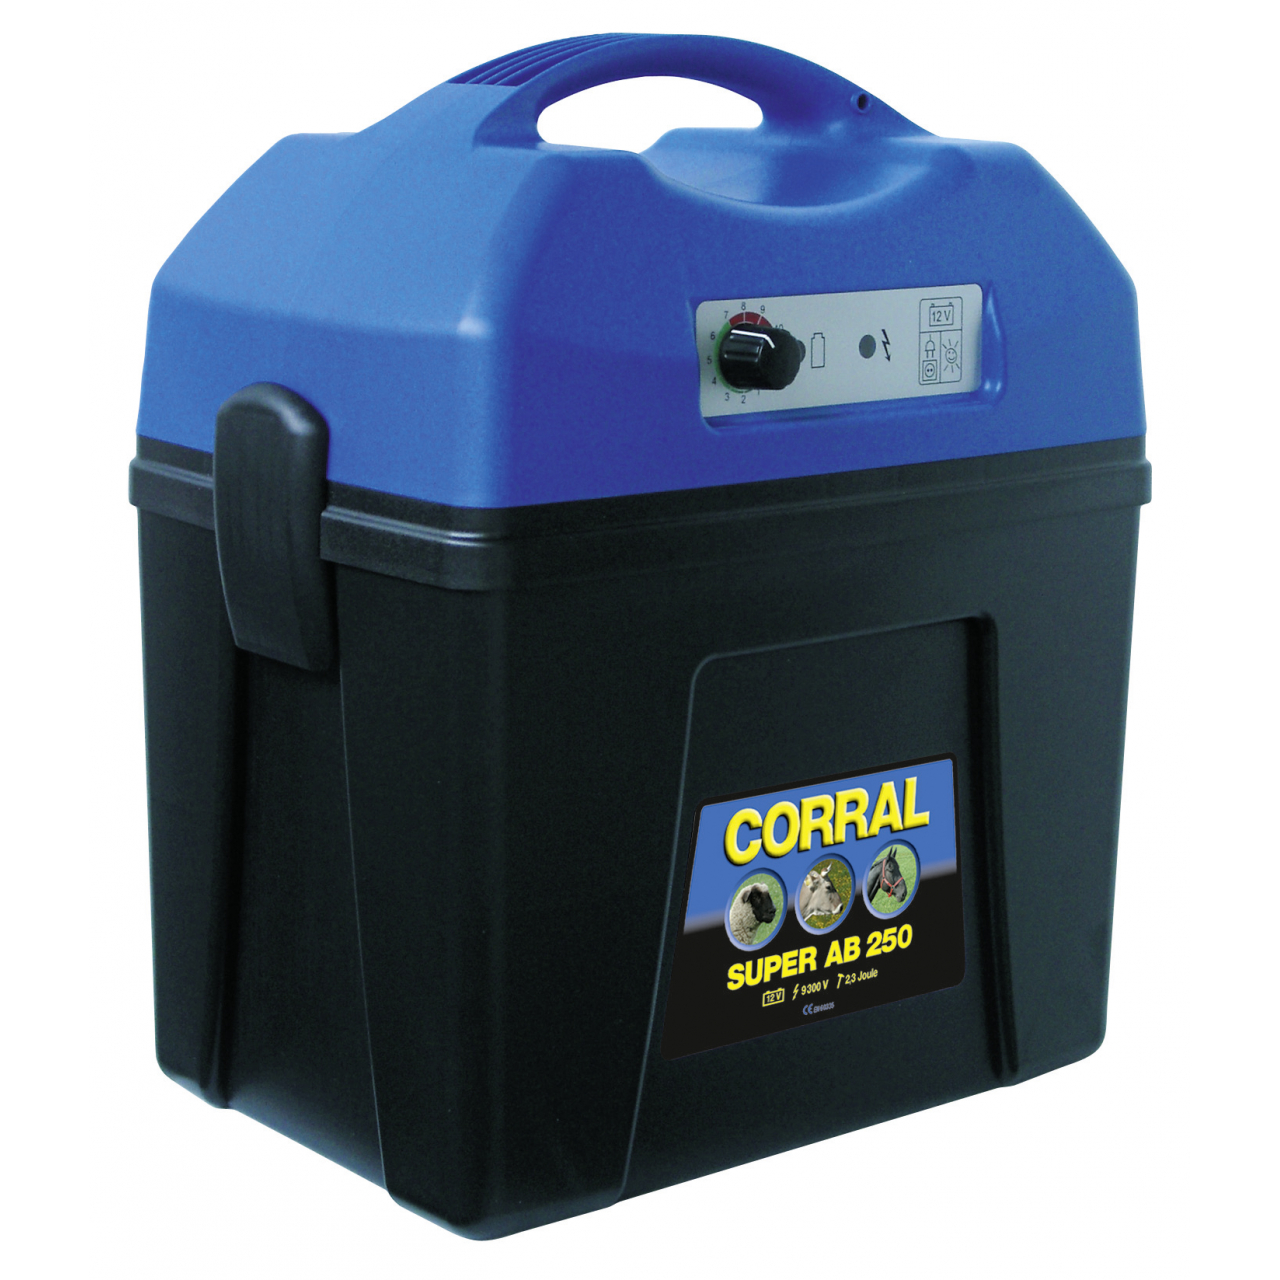 Corral Super AB 250 Villanypásztor készülék 12 V - 2,3 J